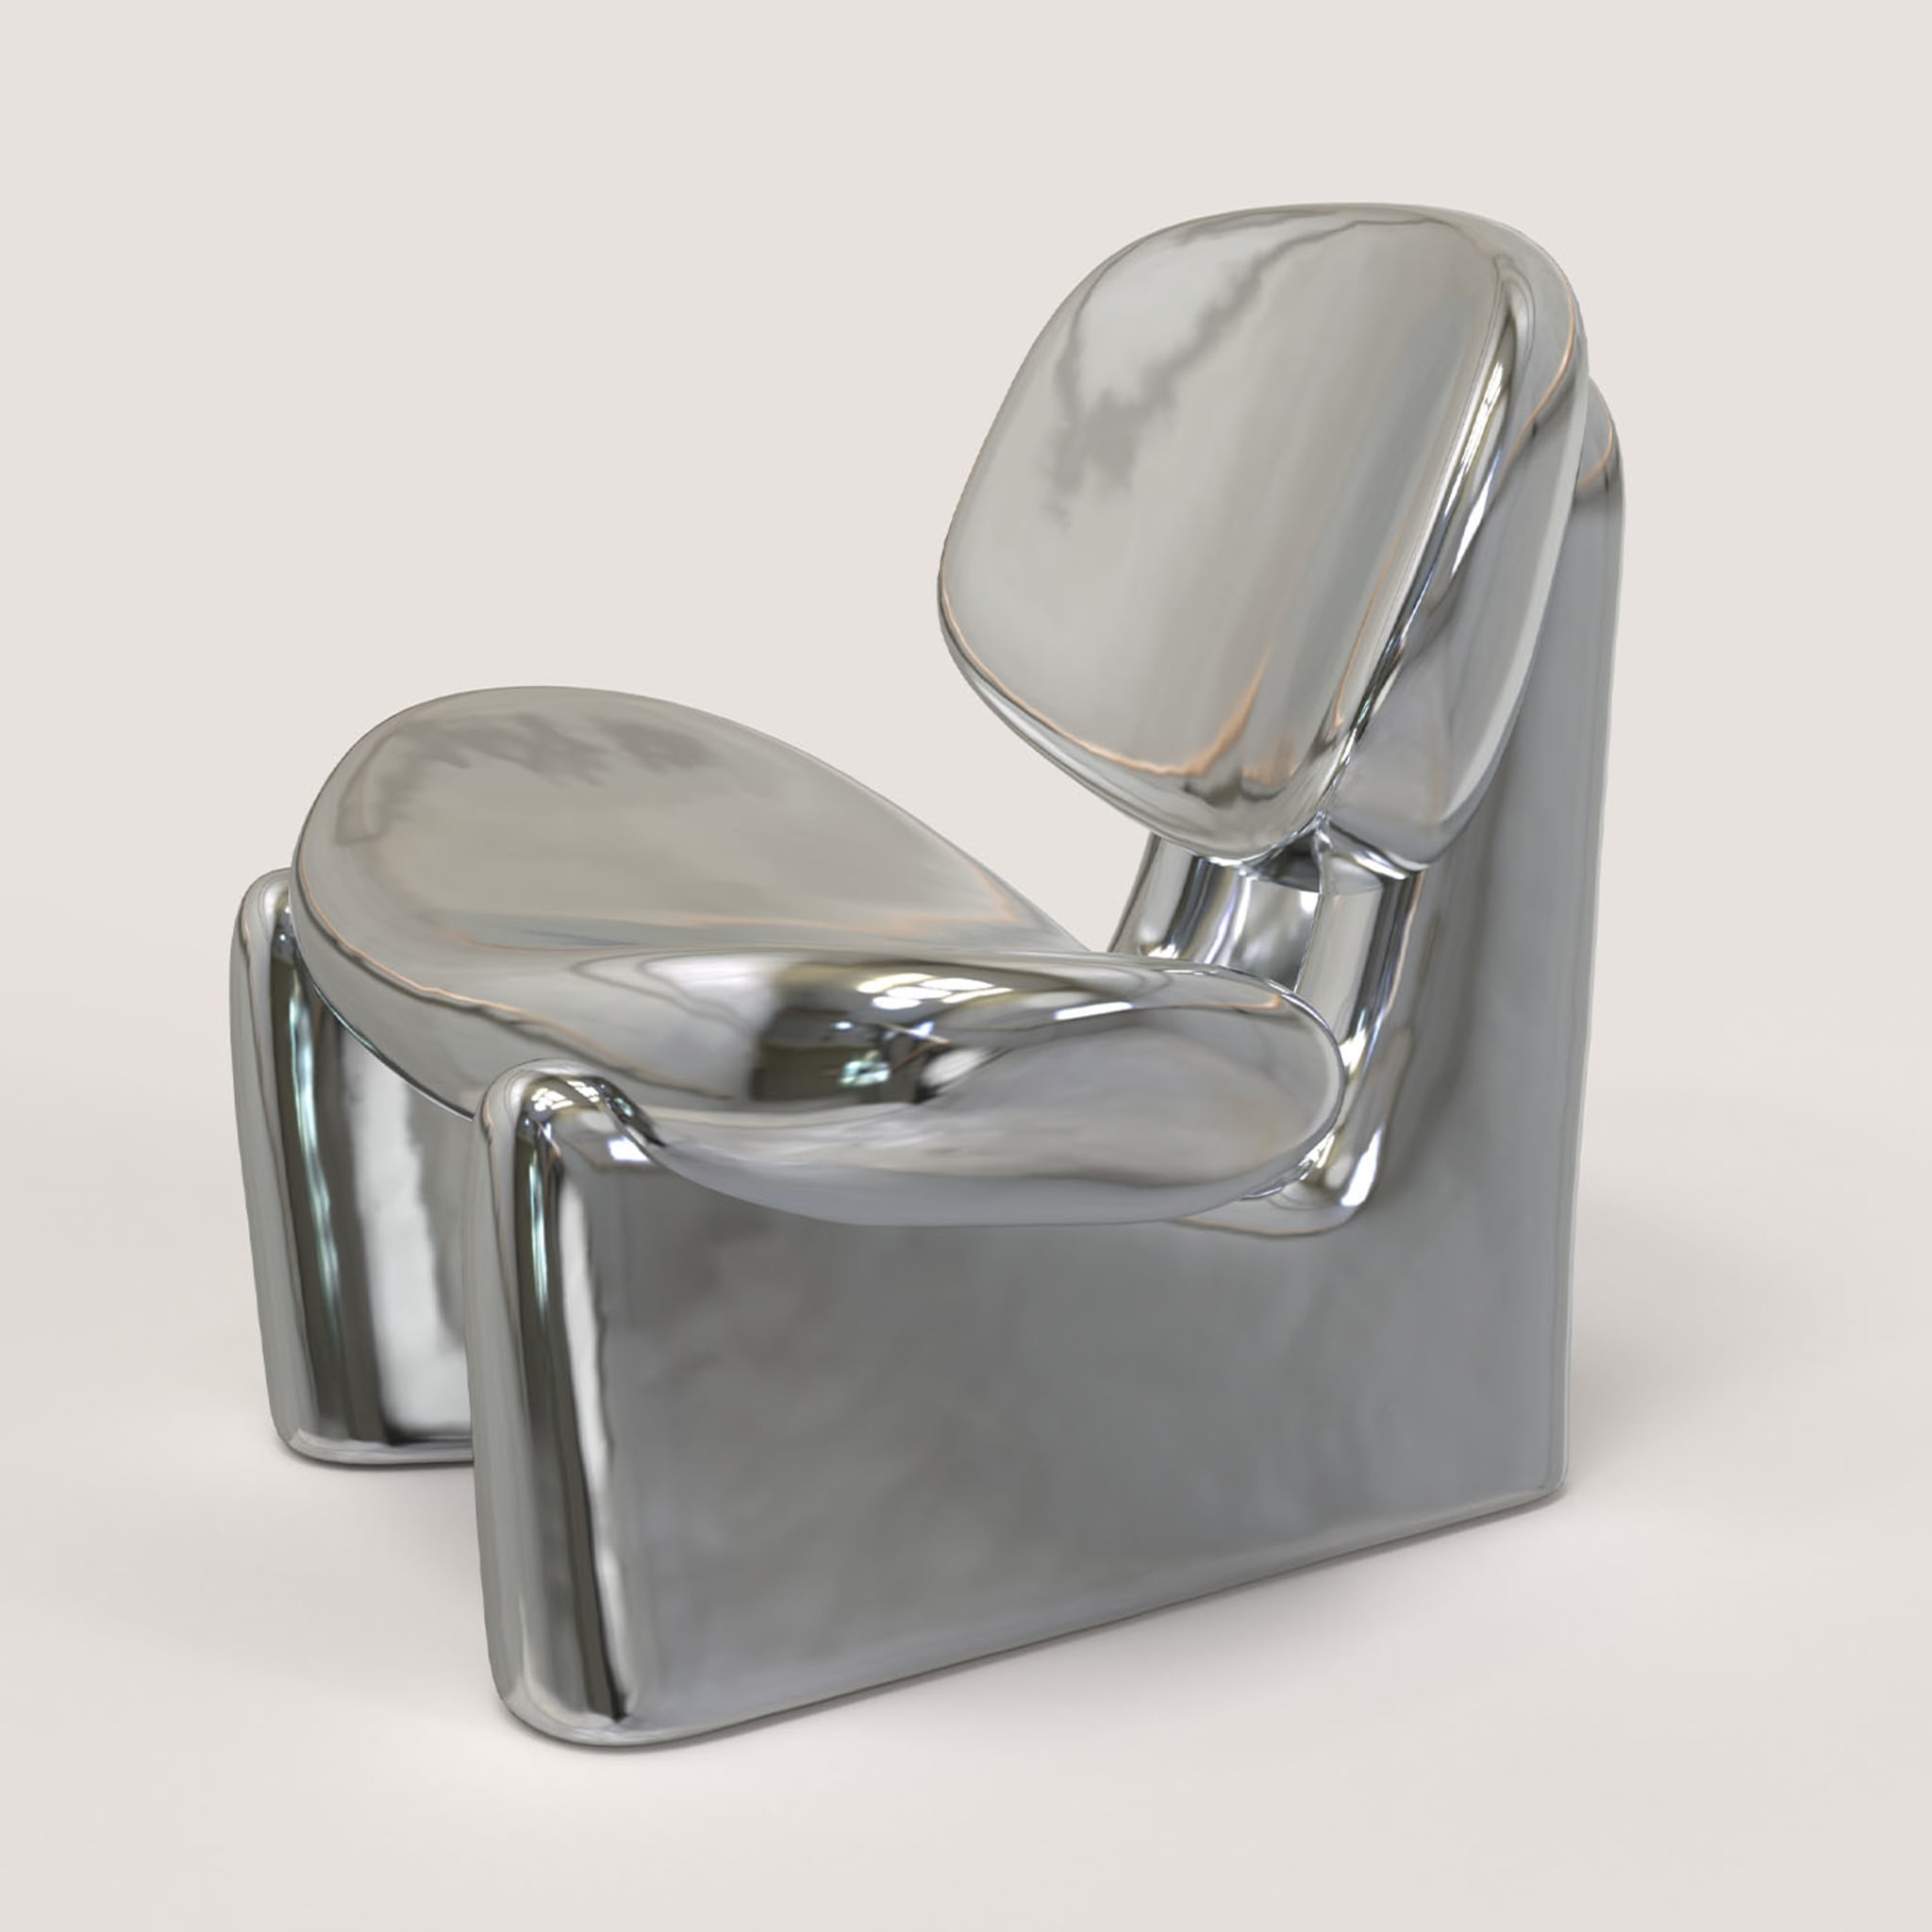 Pau V1 Silver Sculptural Chair - Alternative view 3